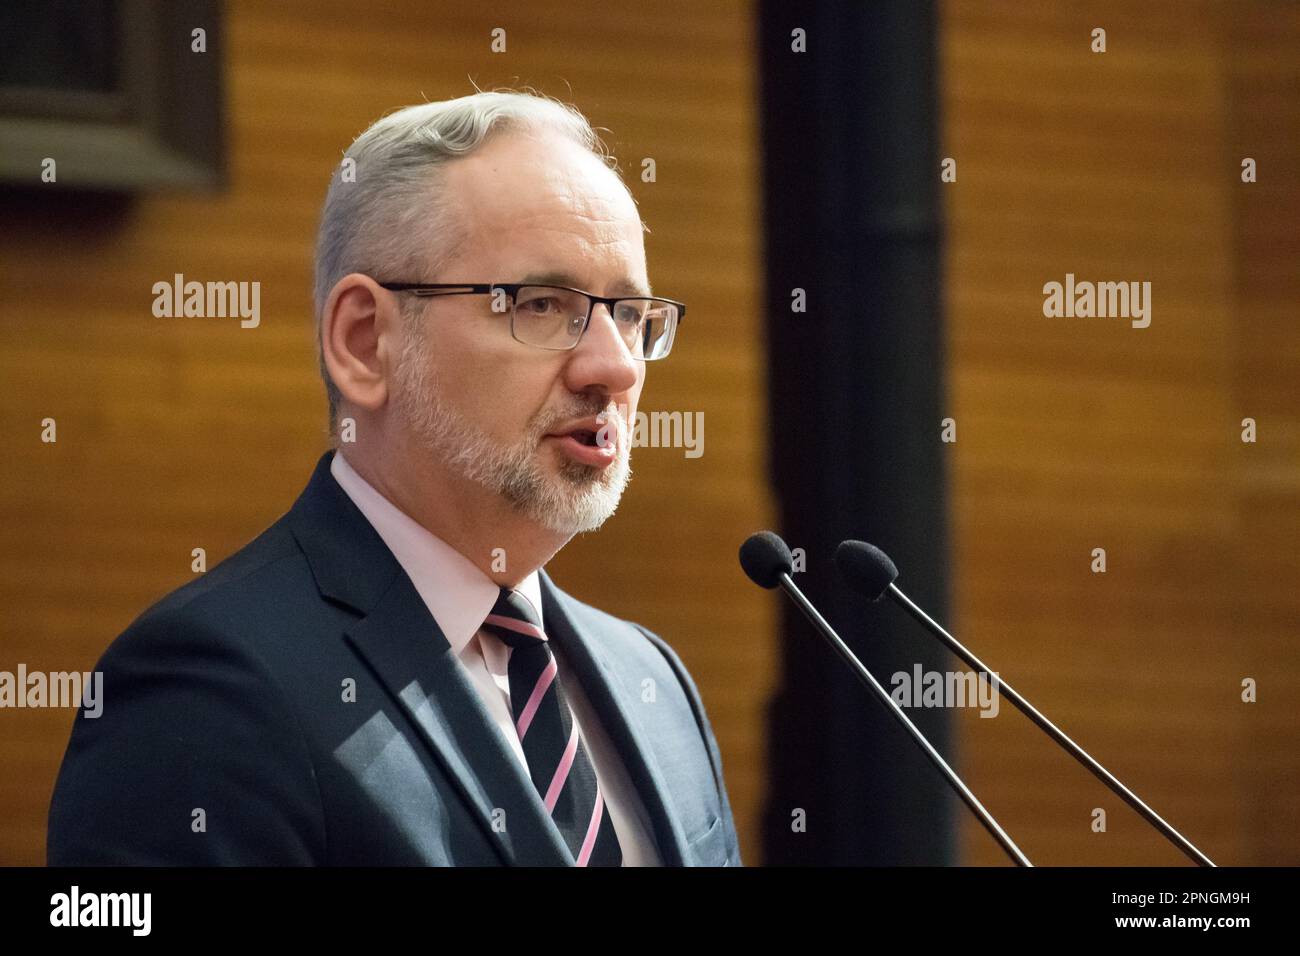 Adam Niedzielski, Minister of Health of Poland in Gdansk, Poland © Wojciech Strozyk / Alamy Stock Photo Stock Photo